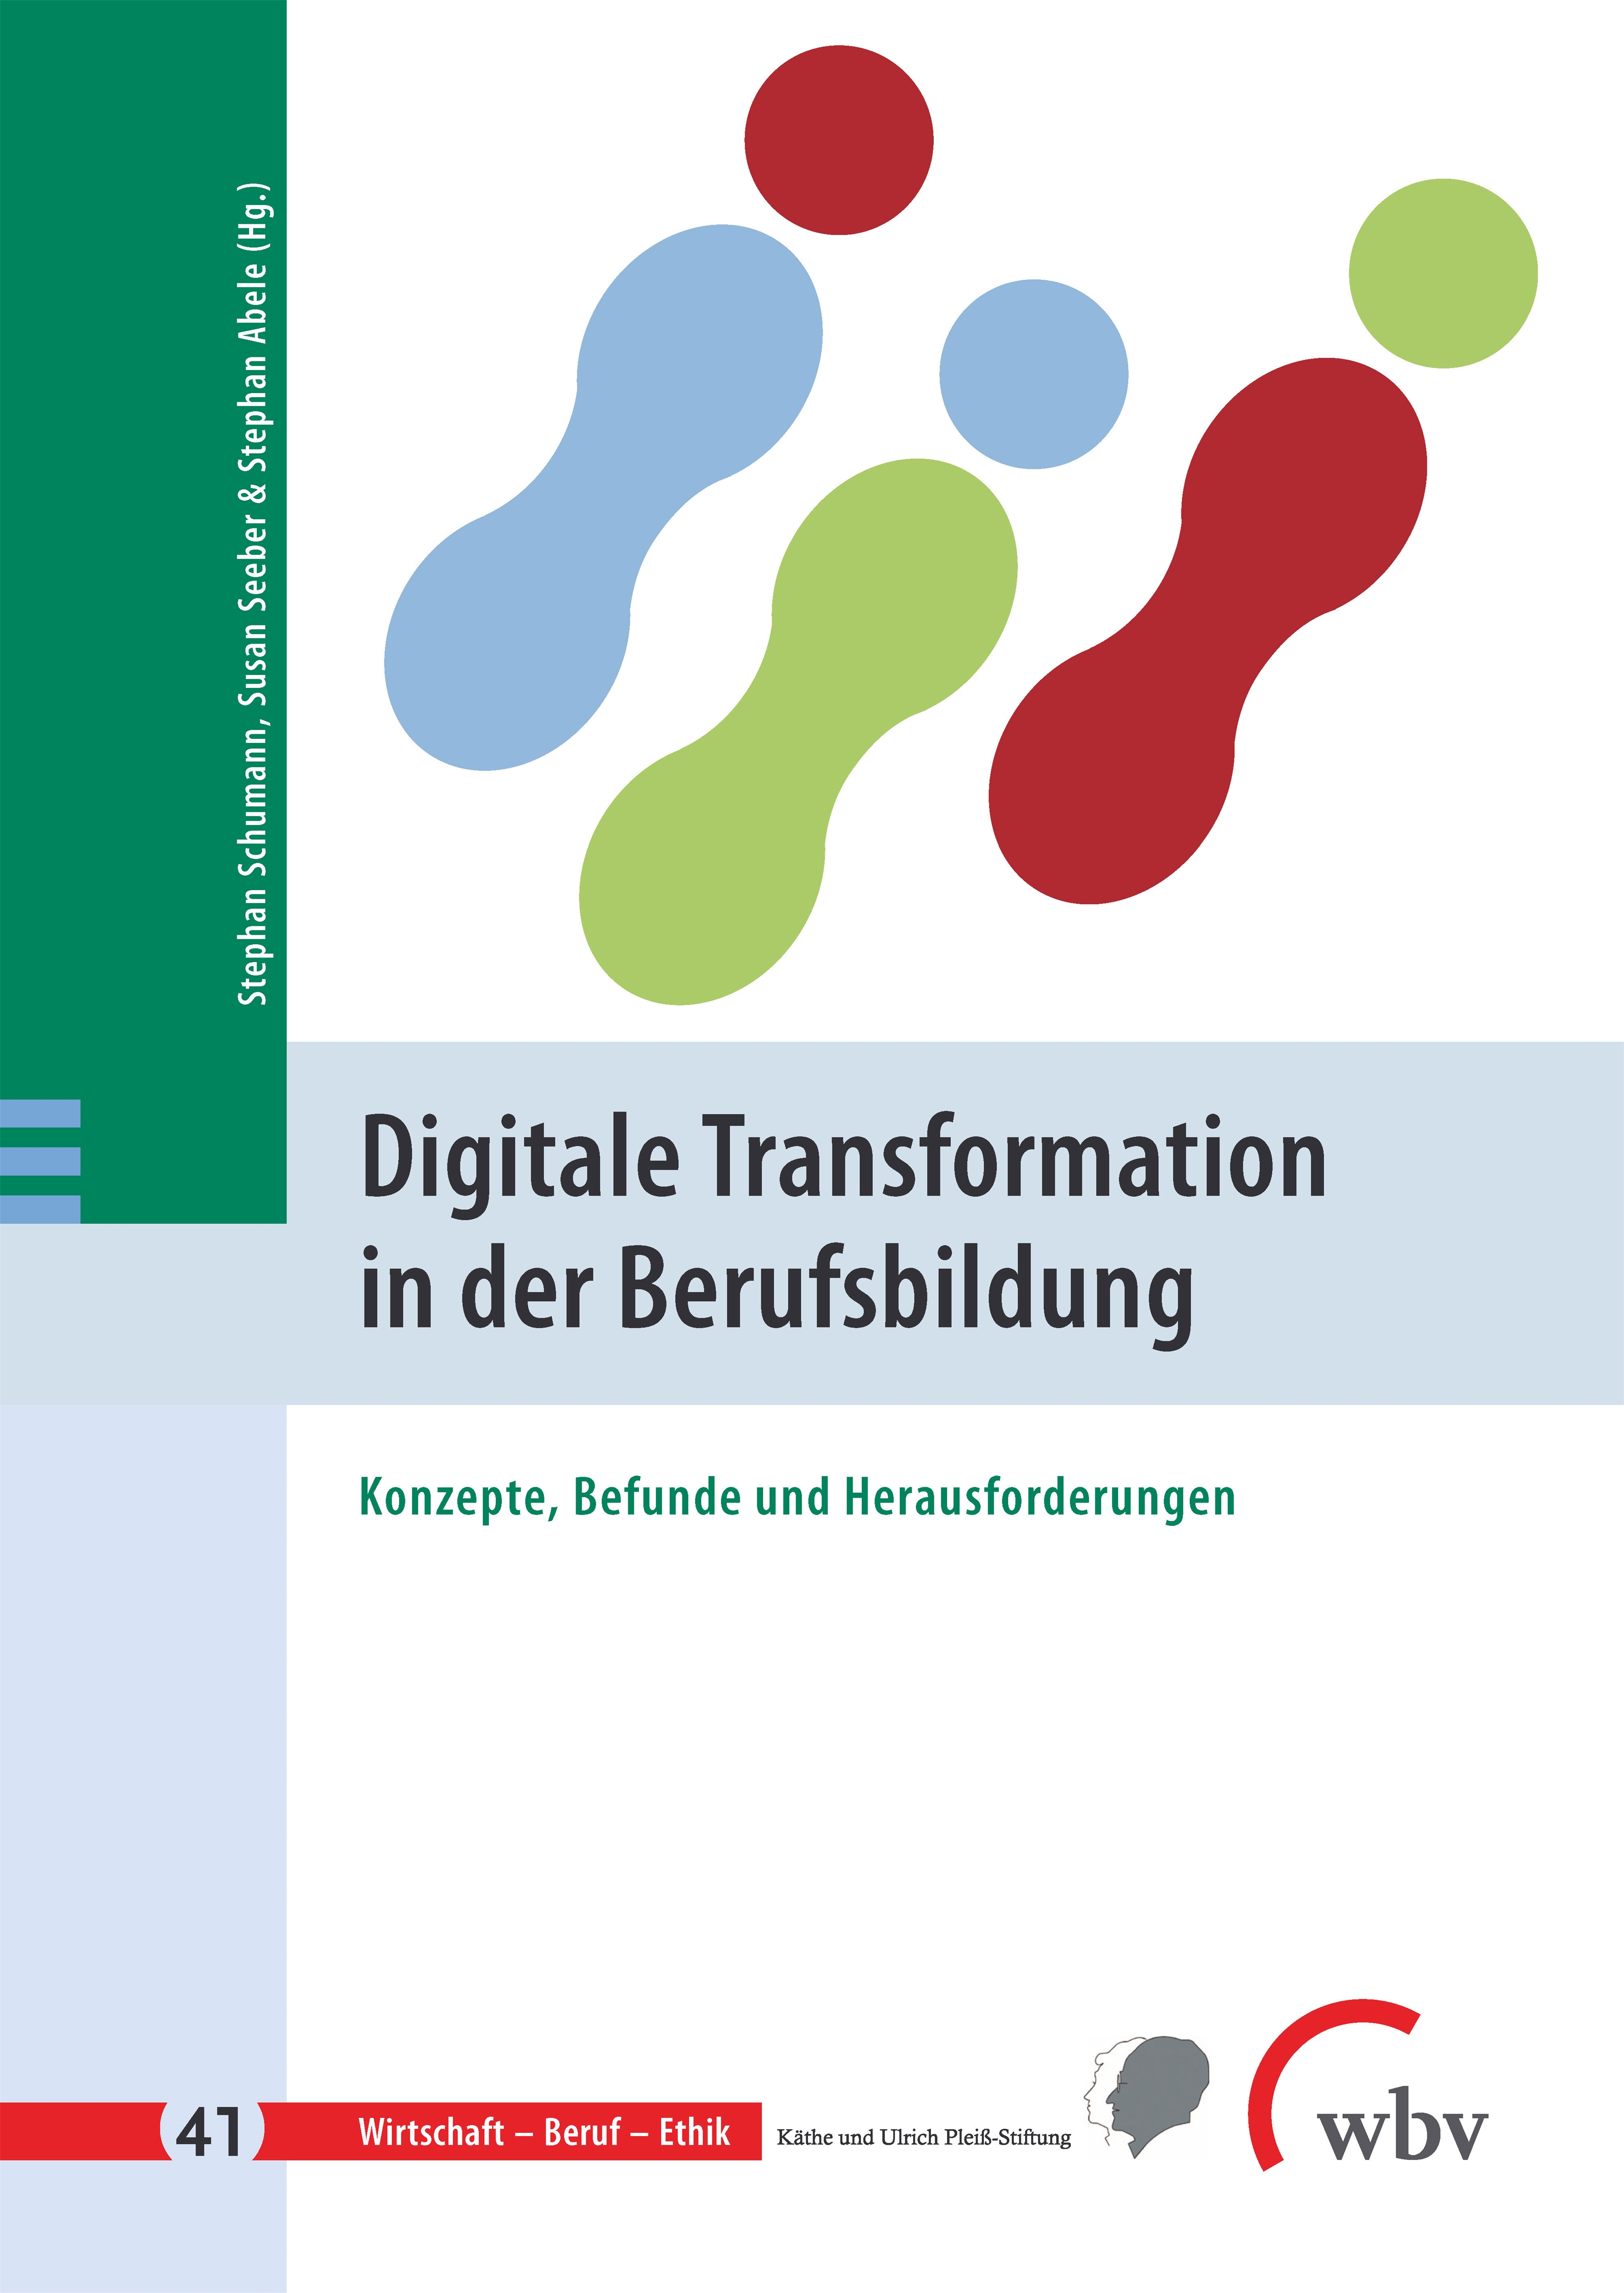 Digitale Transformation in der Berufsbildung